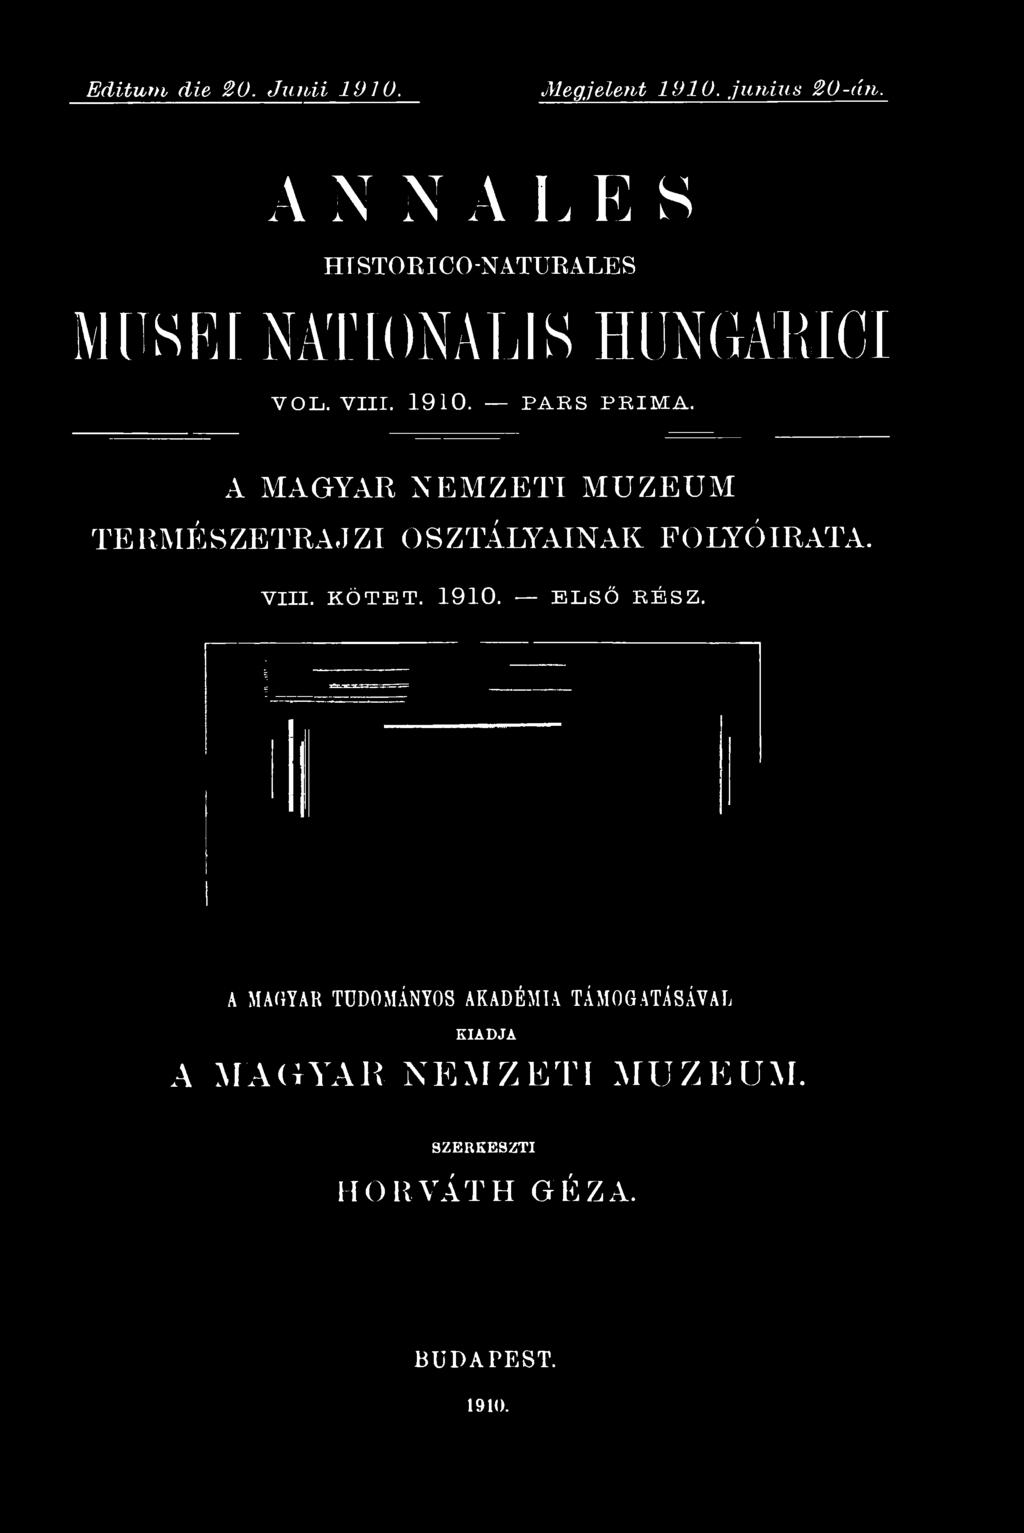 A MAGYAR NEMZETI MUZEUM TERMÉSZETRAJZI OSZTÁLYAINAK FOLYÓIRATA. VIII. KÖTET. 1910.